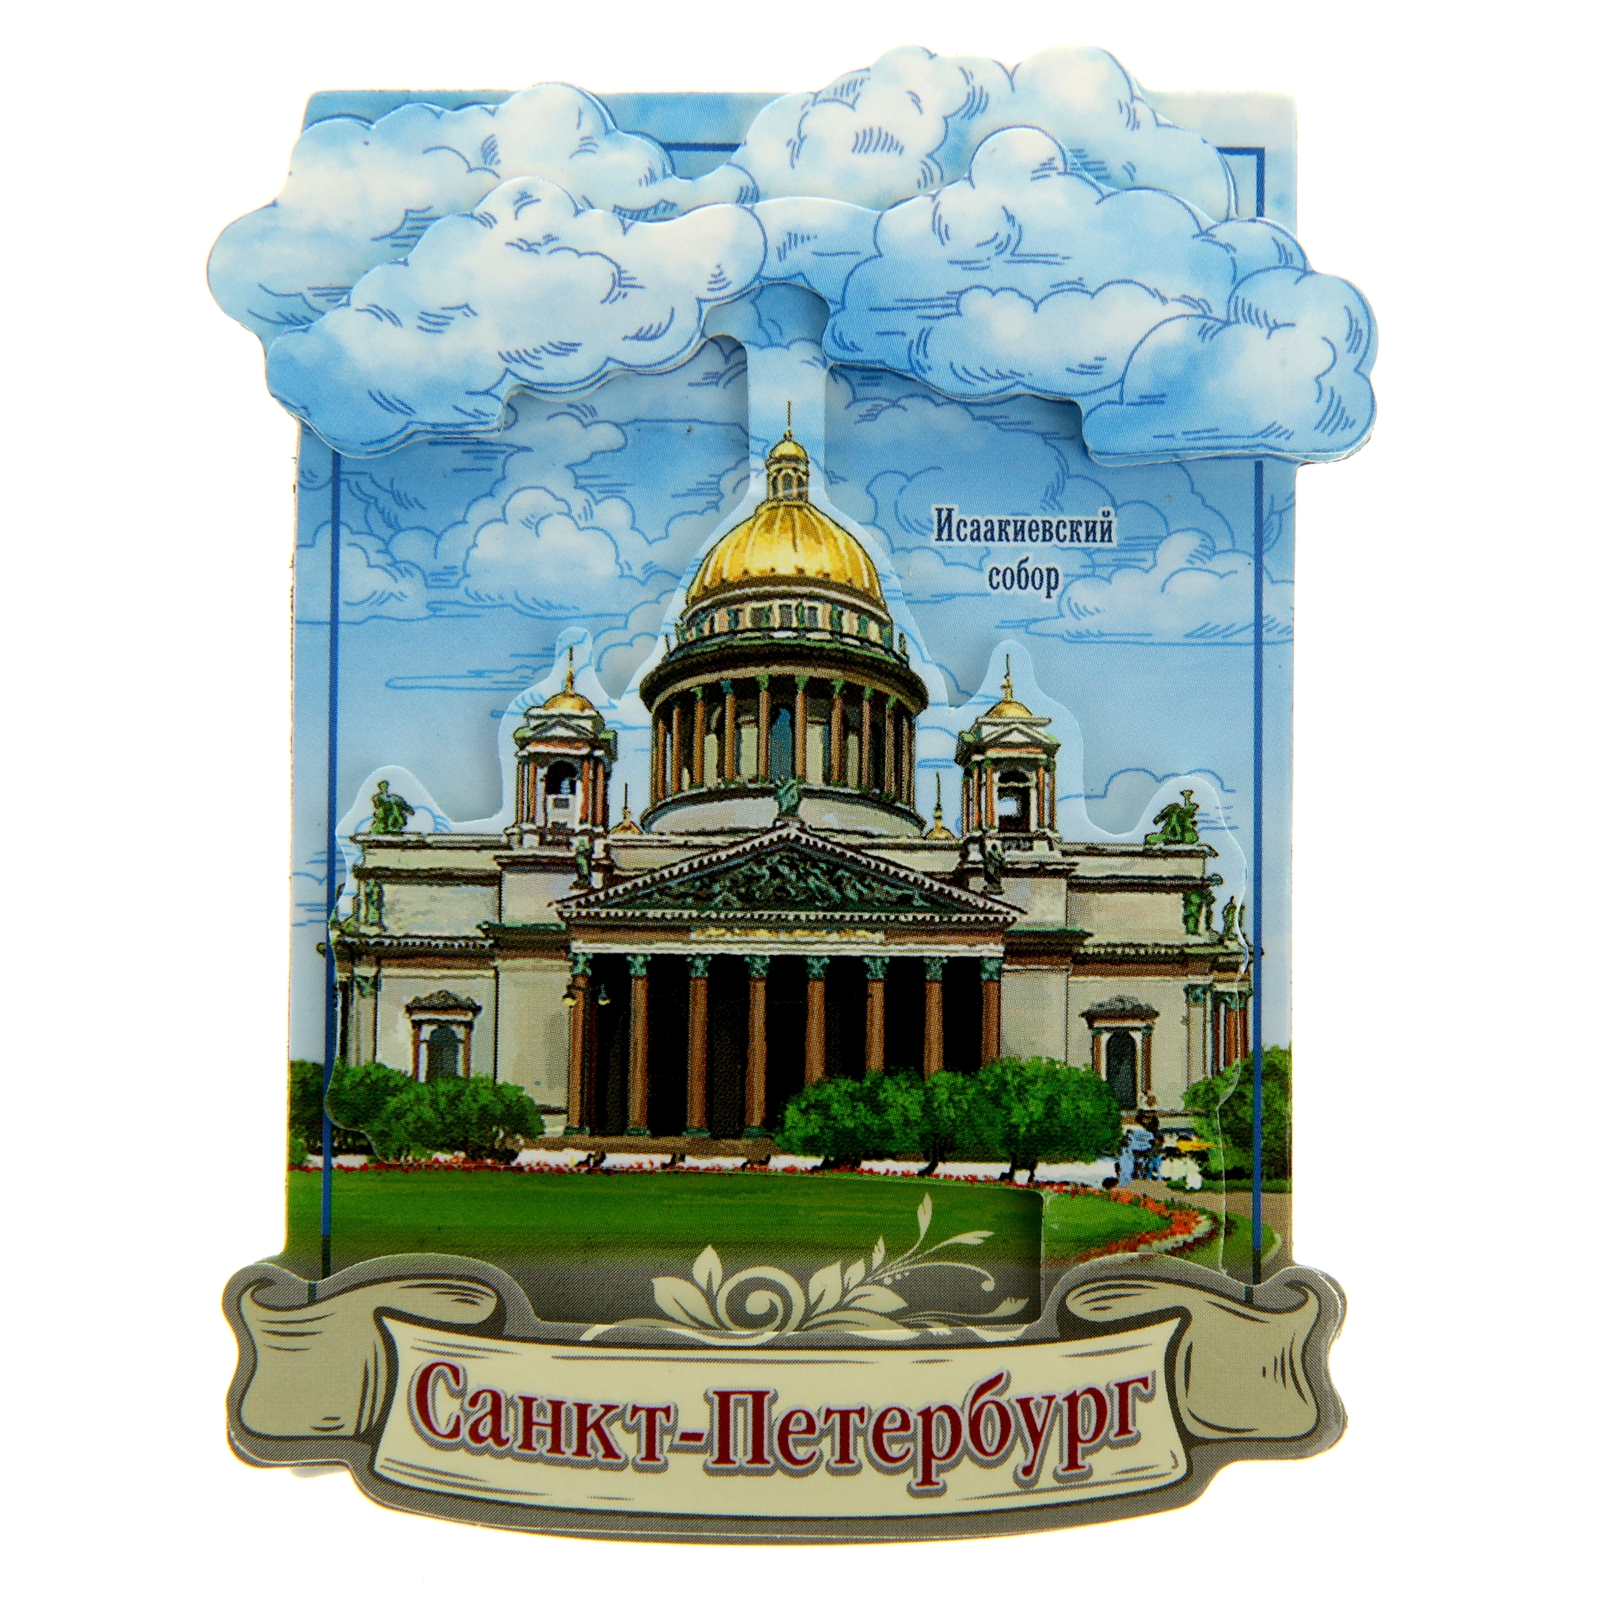 Объявления г петербург. Магнитик с городом Санкт Петербург. Магнит на холодильник Питер.